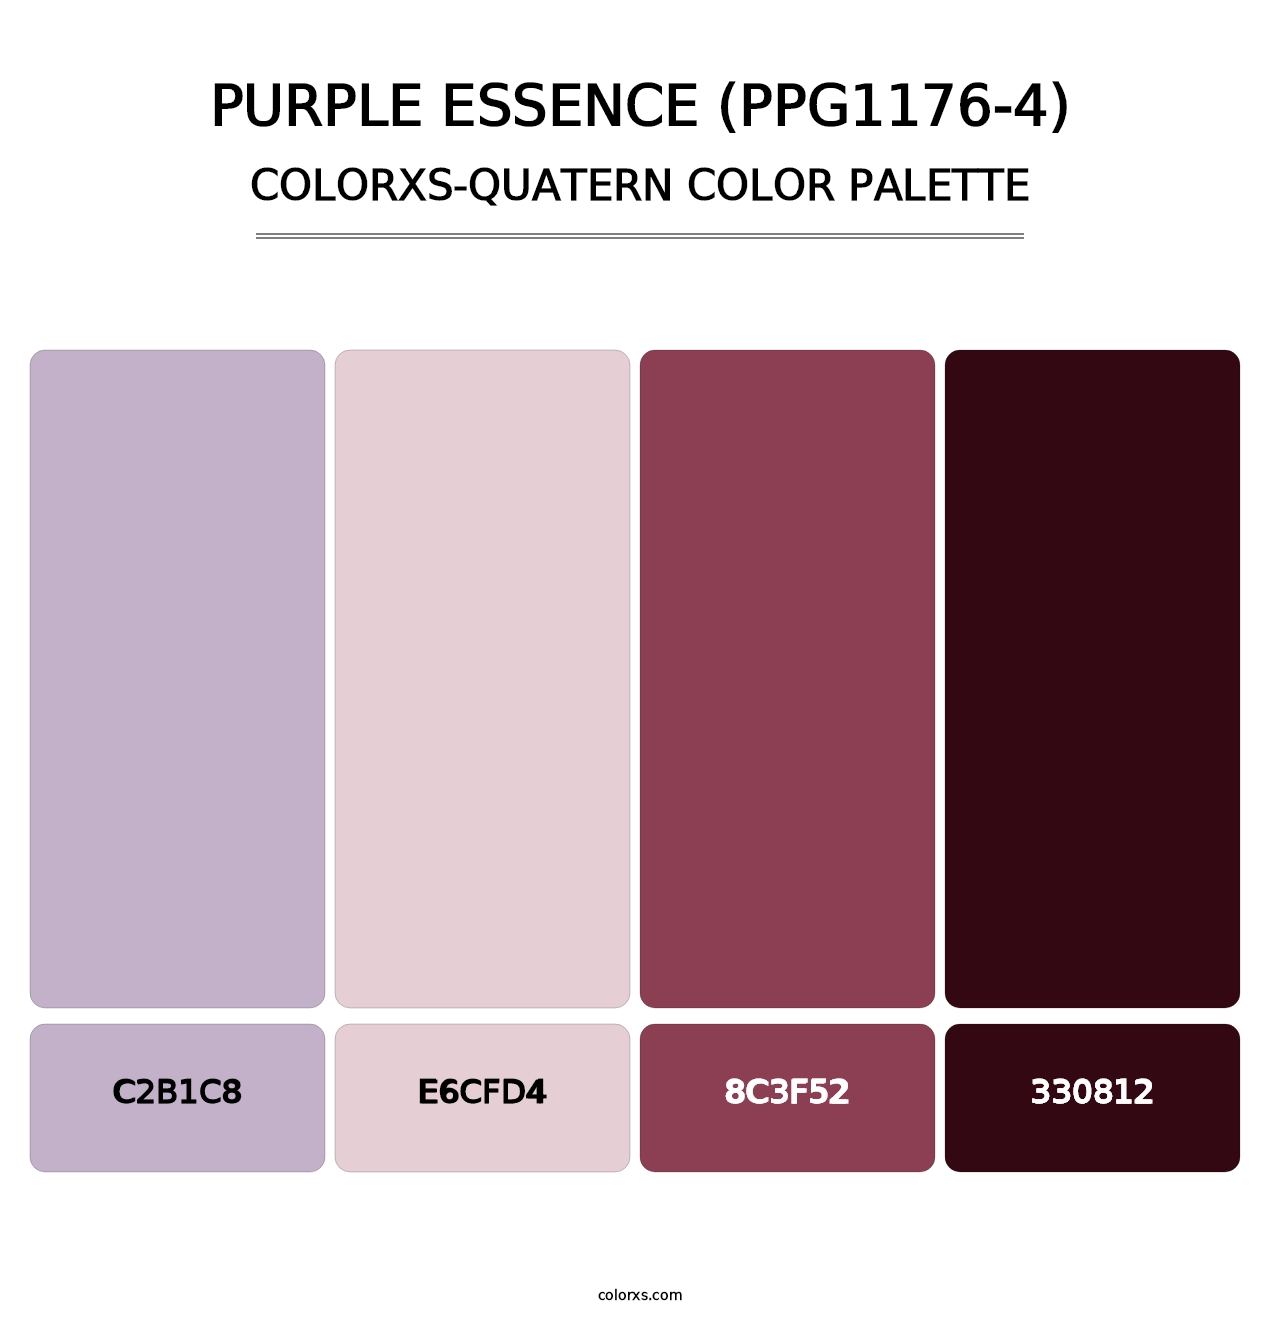 Purple Essence (PPG1176-4) - Colorxs Quatern Palette